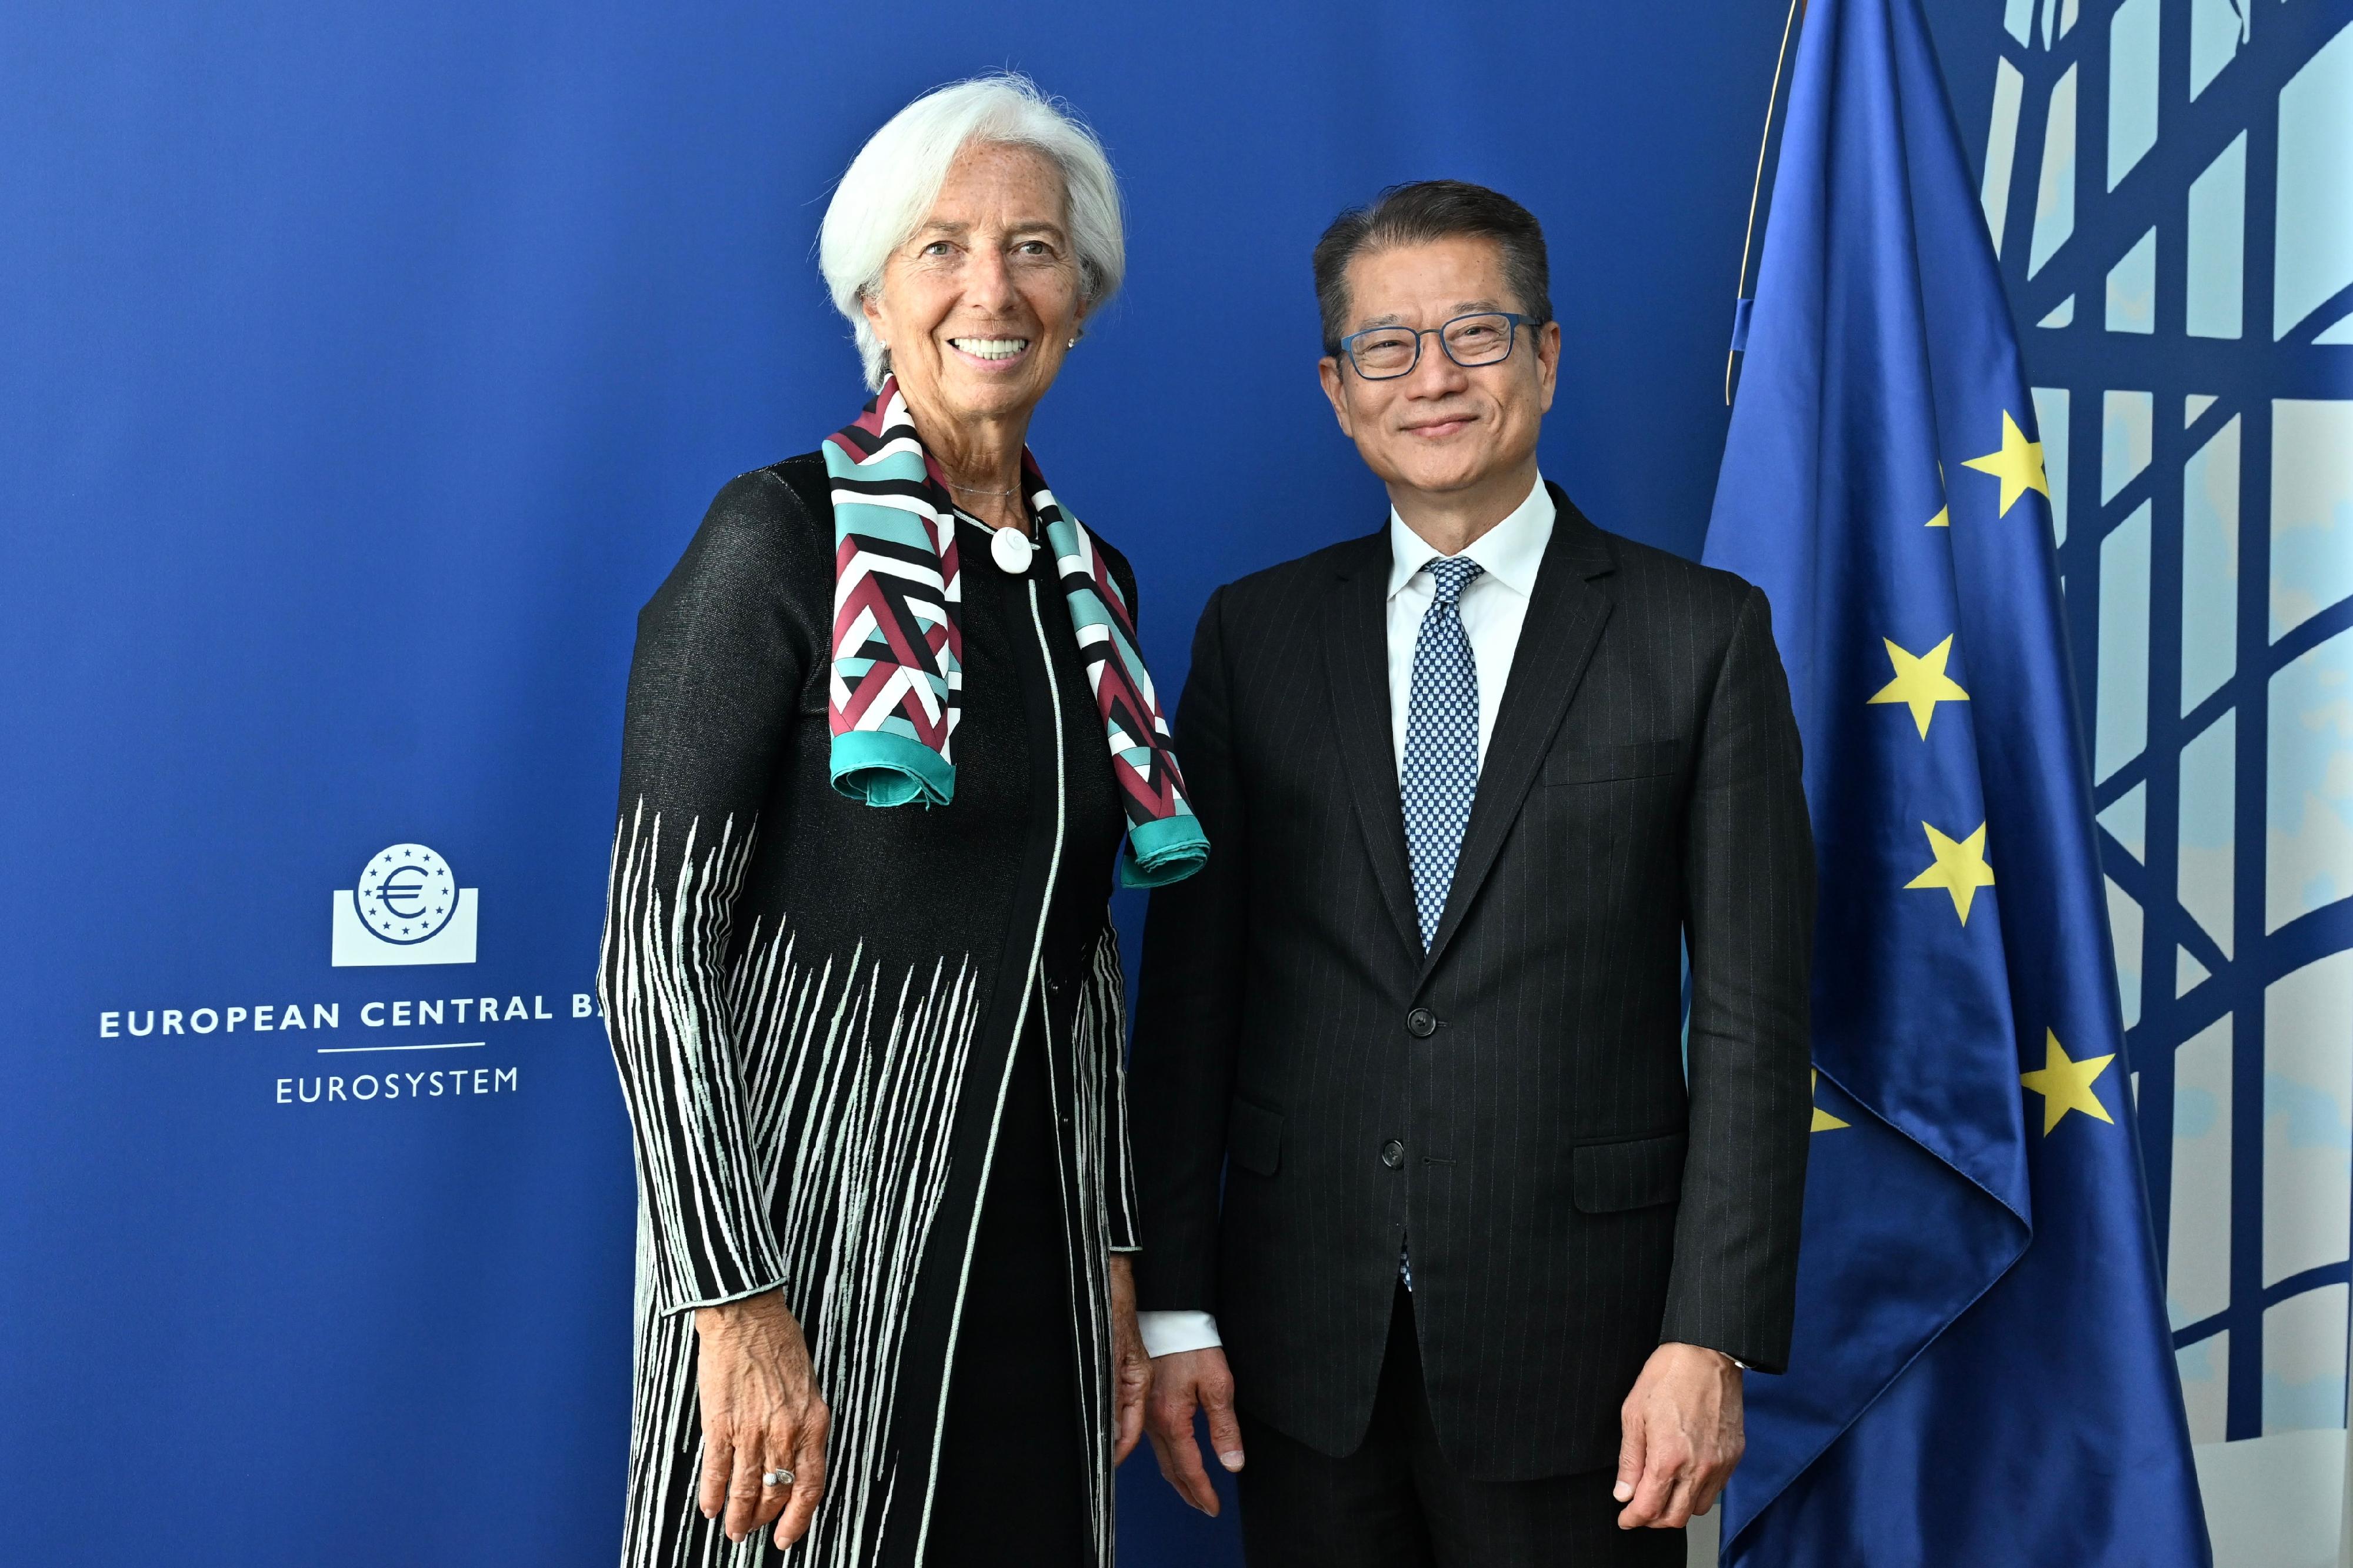 財政司司長陳茂波昨日（法蘭克福時間九月二十六日）訪問德國法蘭克福。圖示陳茂波（右）與歐洲中央銀行行長拉加德（左）在會面前合影。